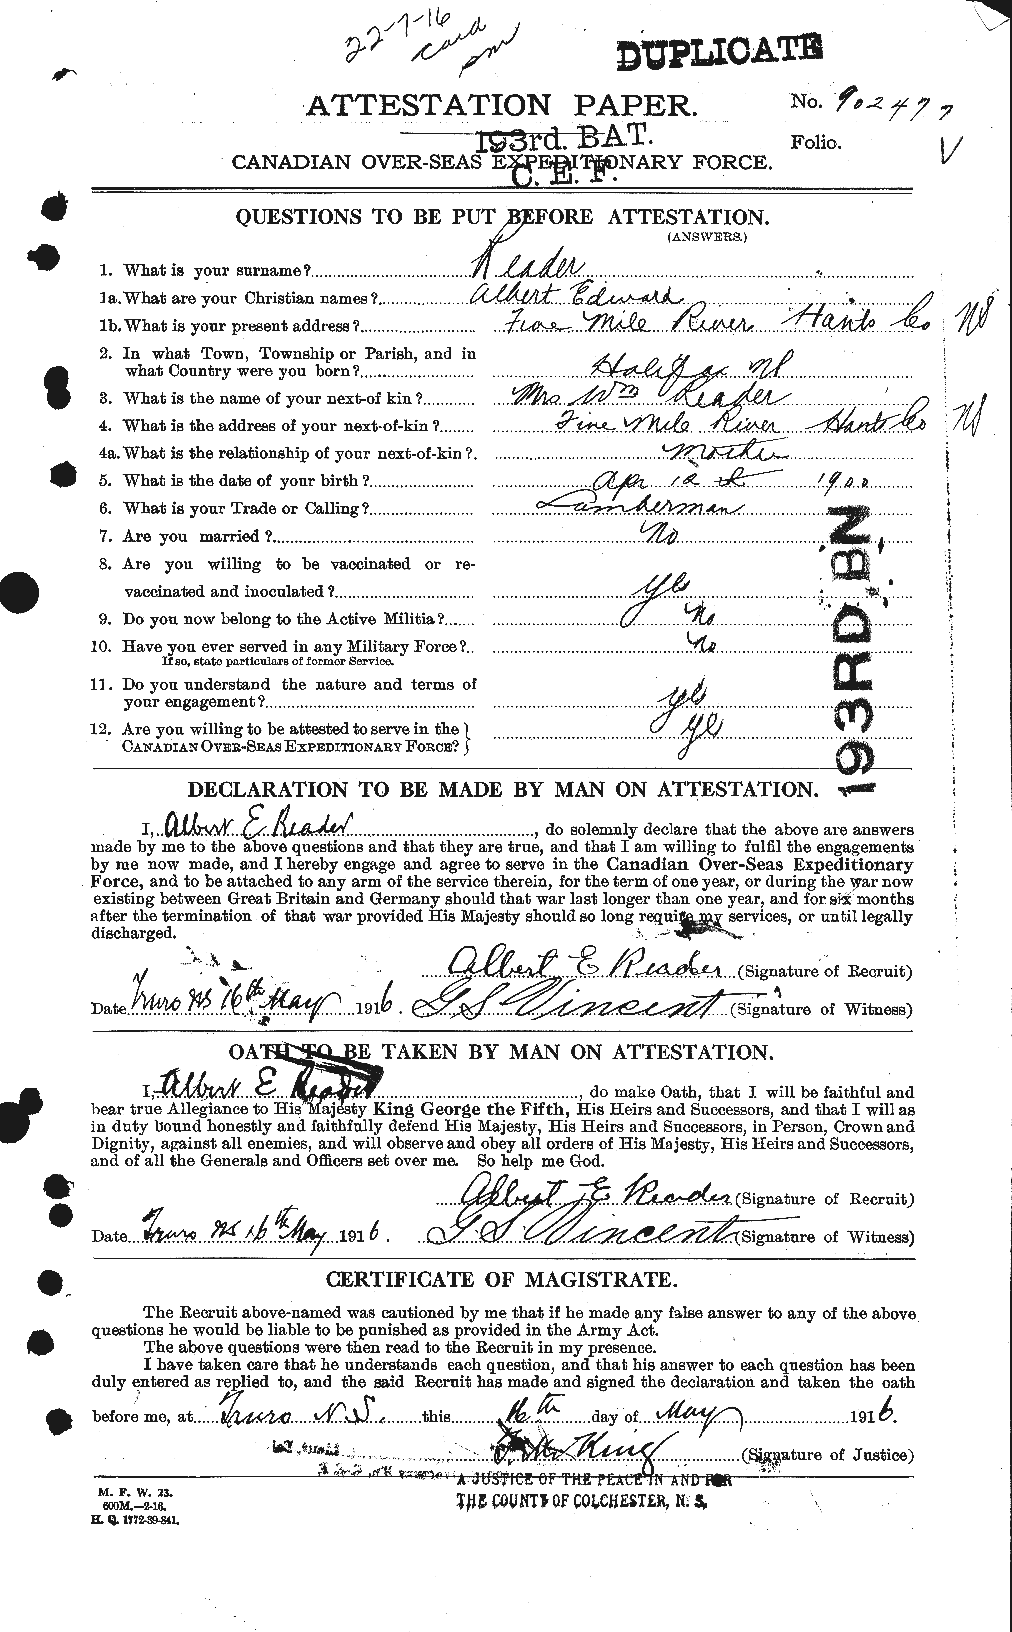 Dossiers du Personnel de la Première Guerre mondiale - CEC 598381a